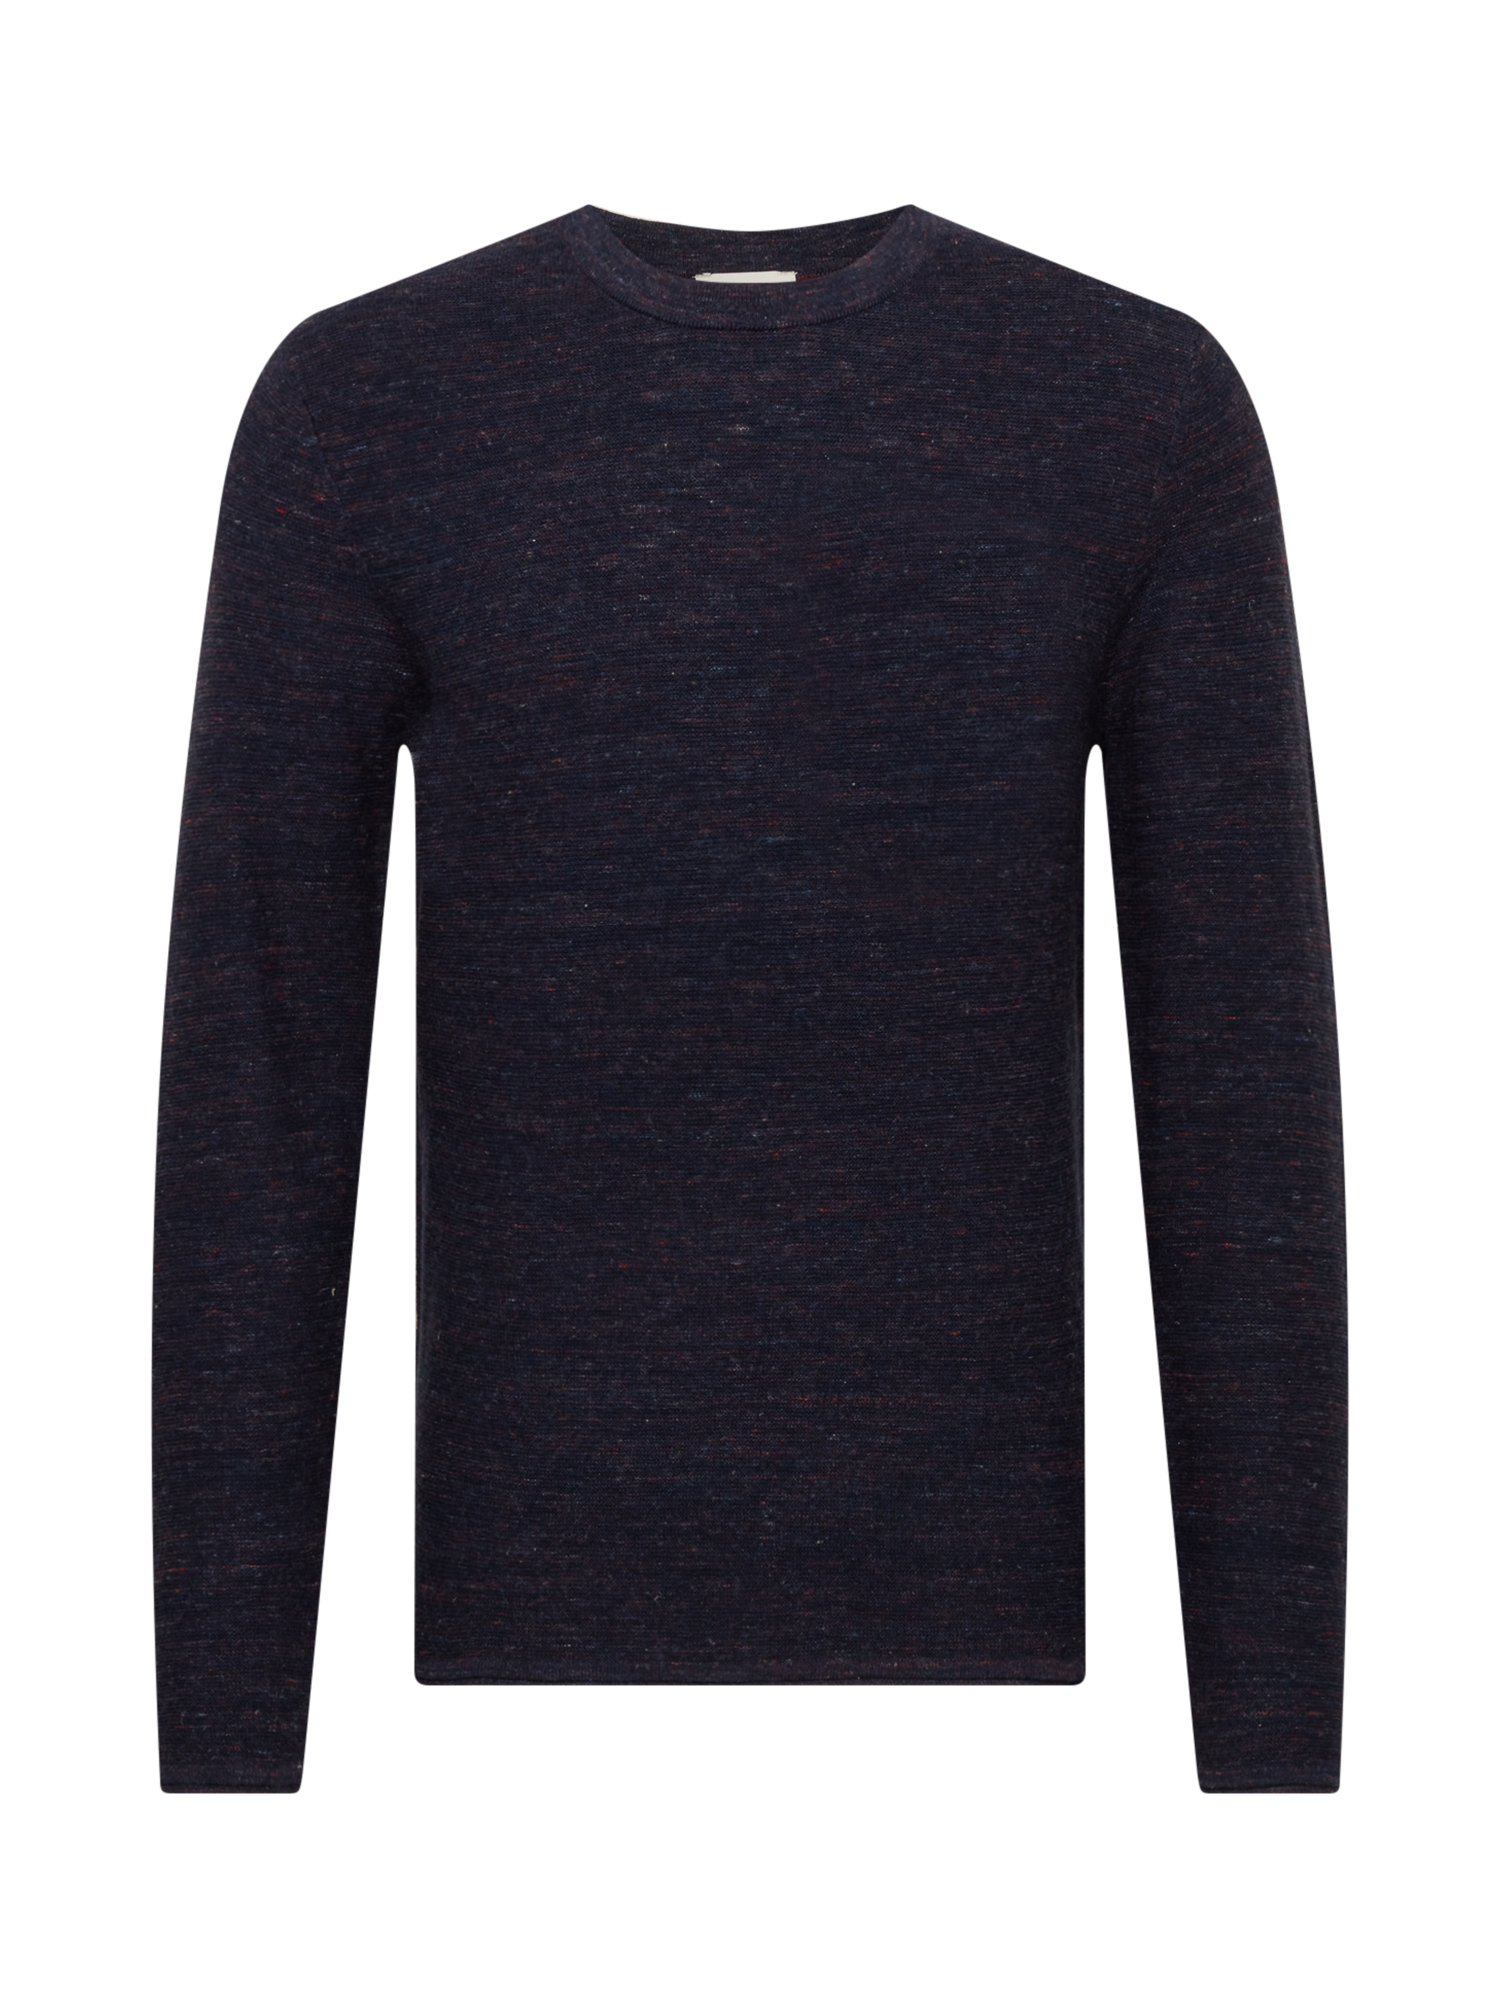 mcIcc Odzież ESPRIT Sweter w kolorze Granatowym 